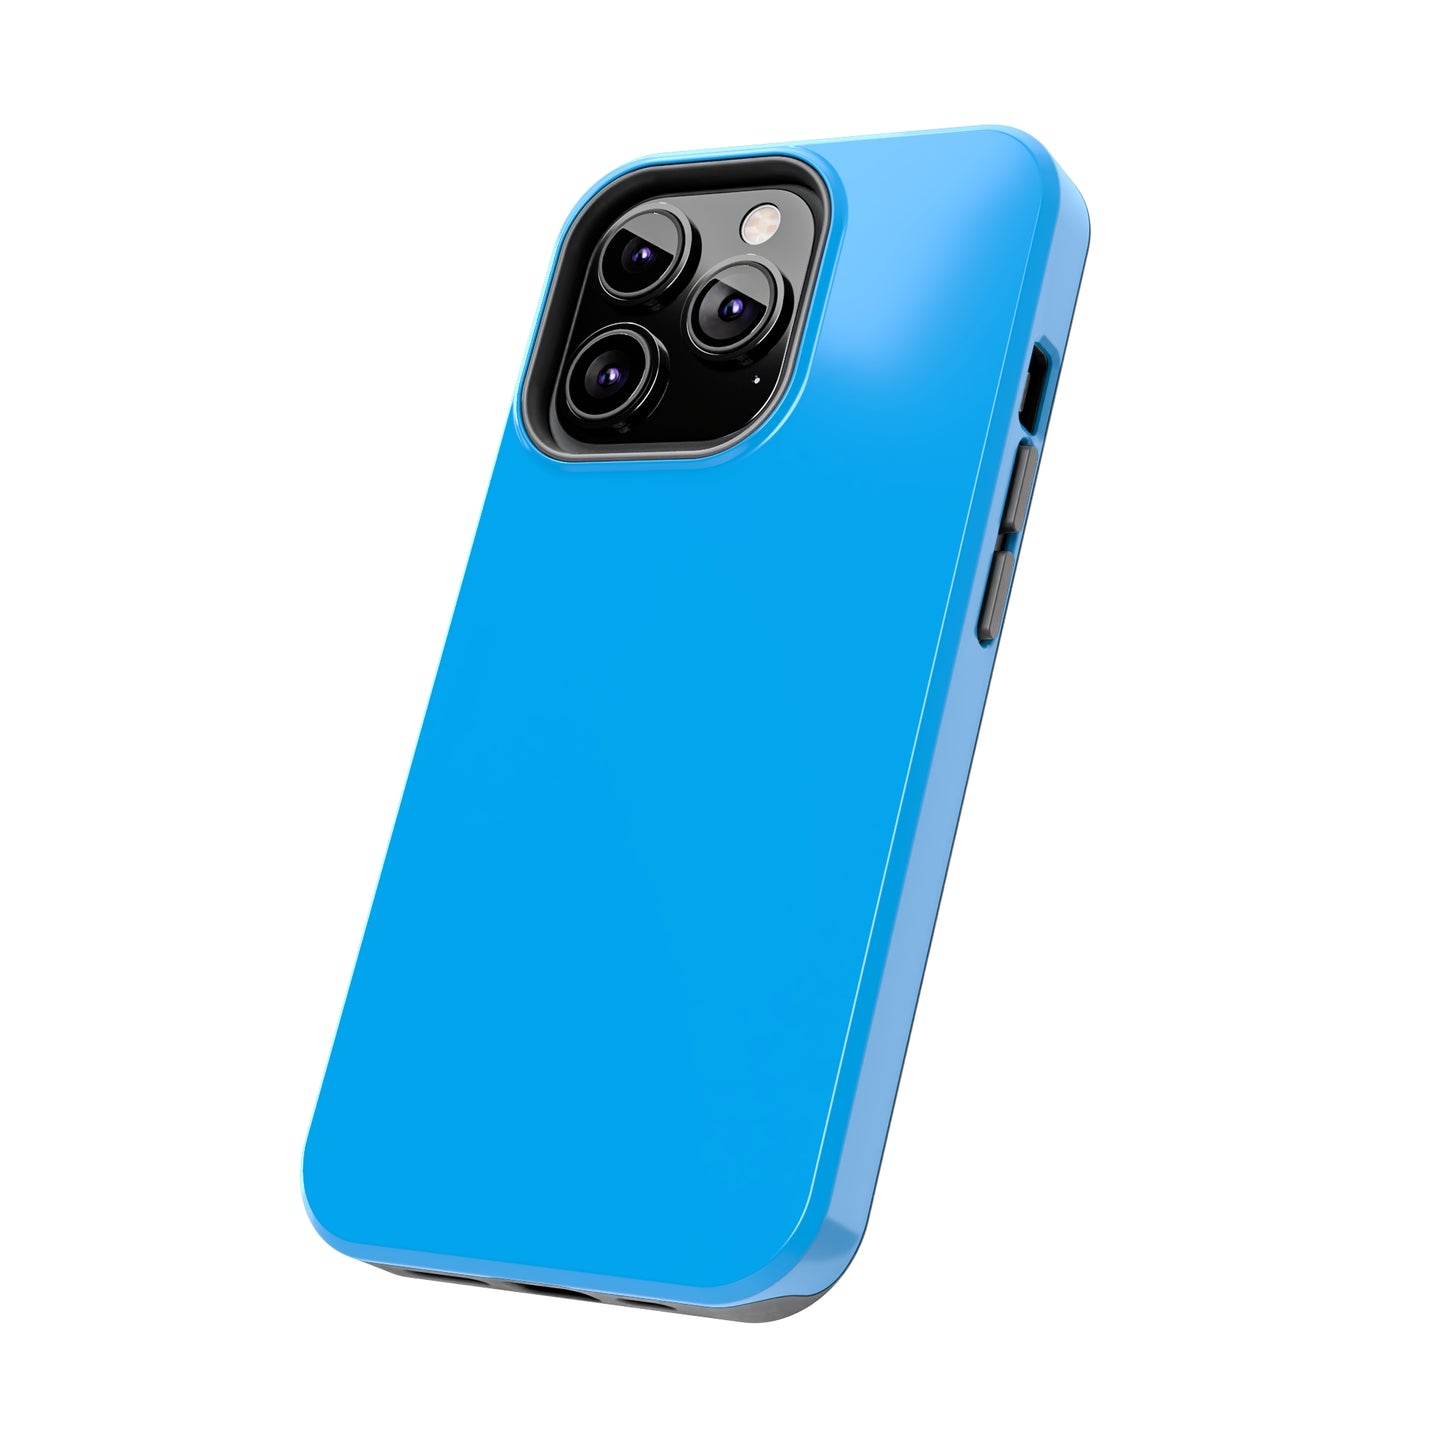 Blue Case